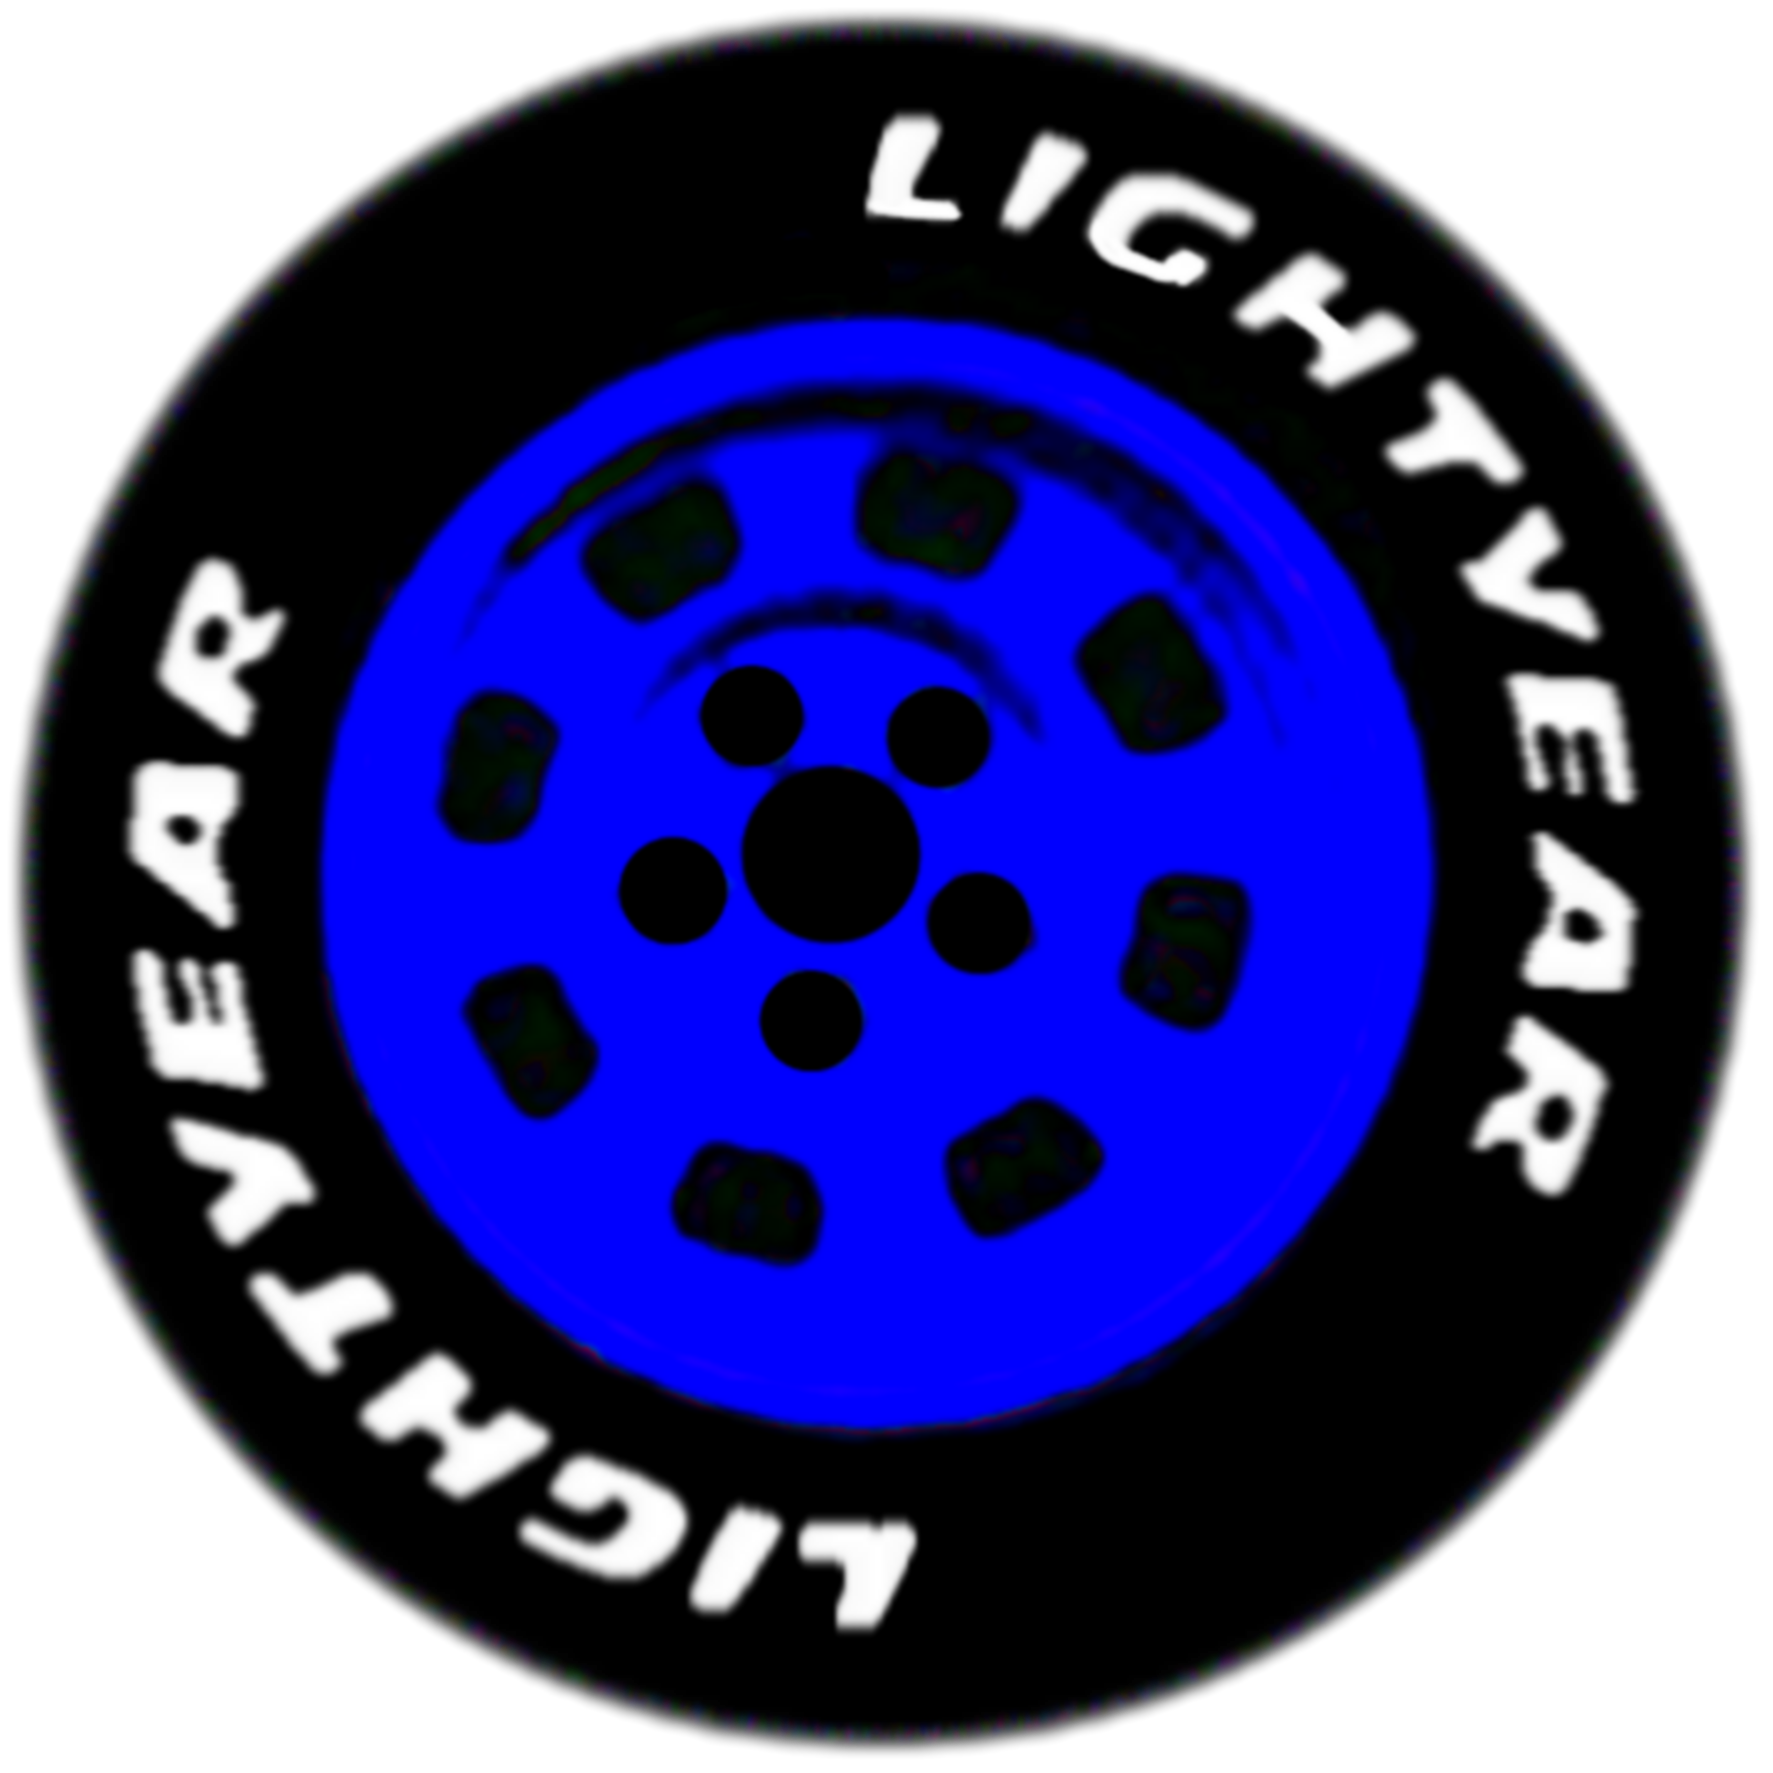 freetoedit-cars-lightyear-tire-wheel-sticker-by-santinoeli4